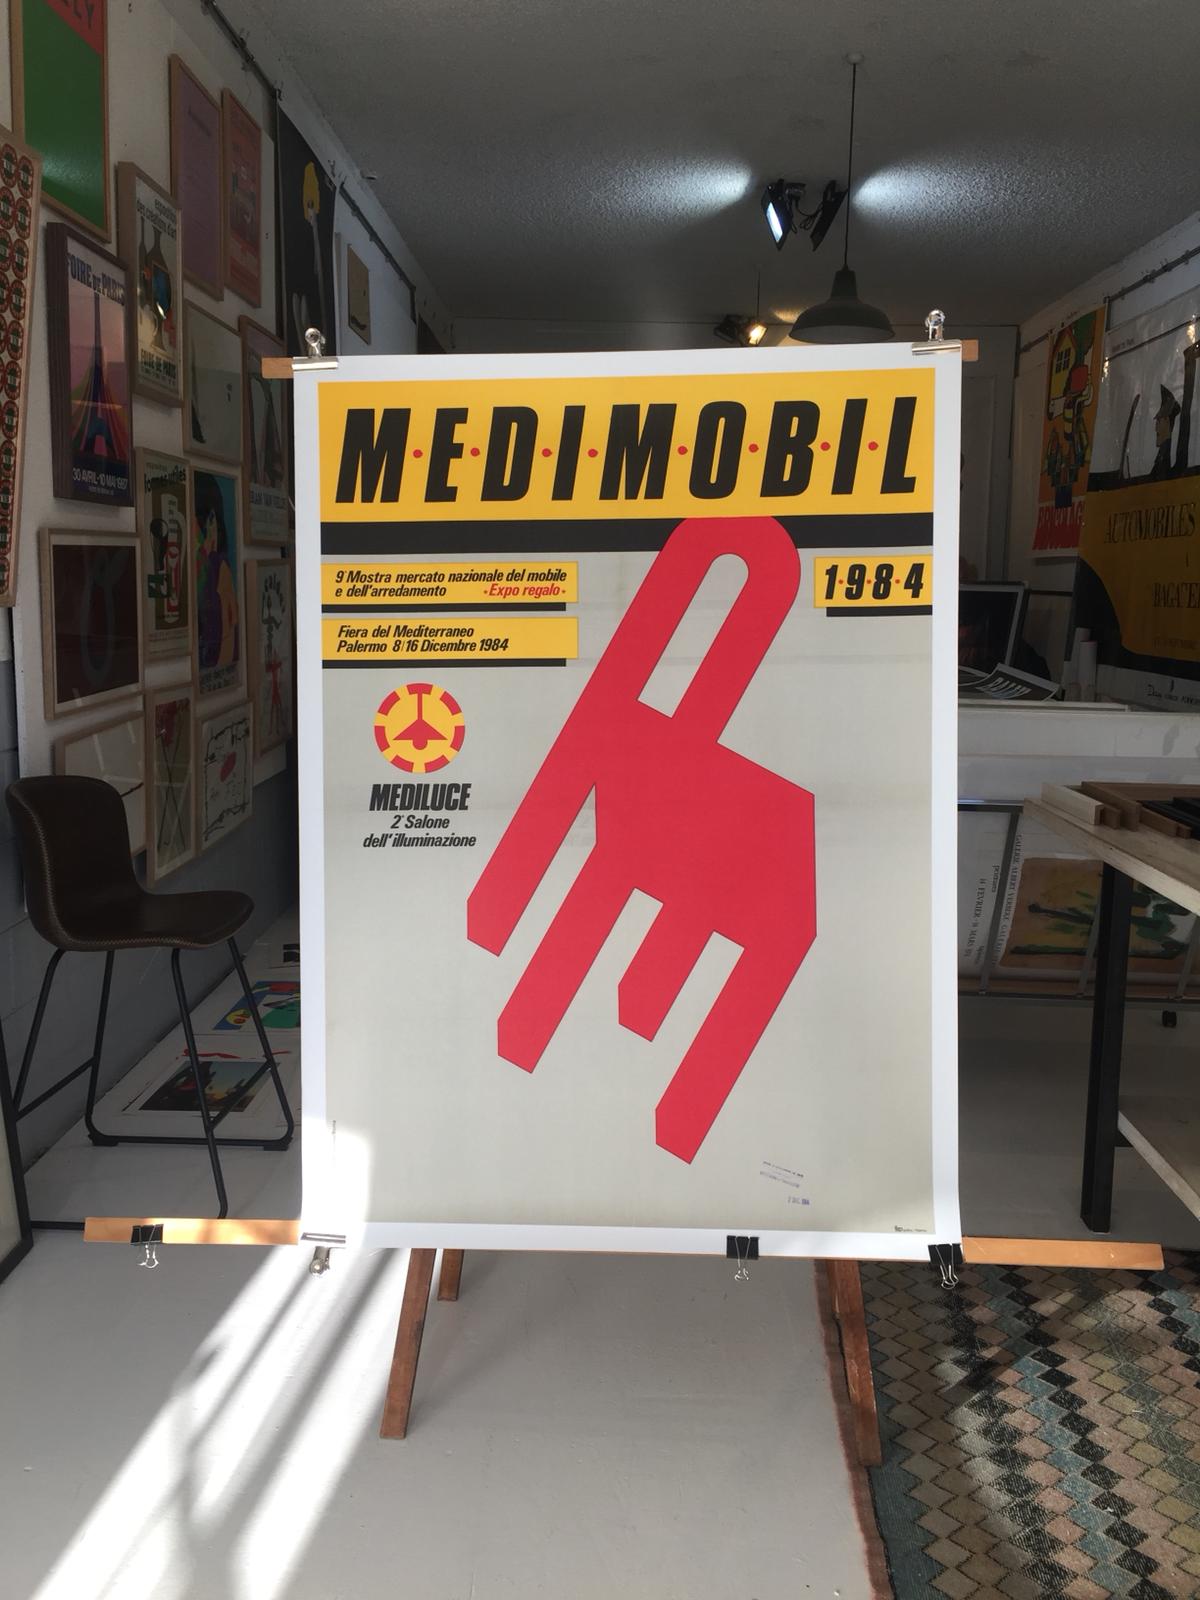 Medimodel '84, Fiera Del Mediterraneo